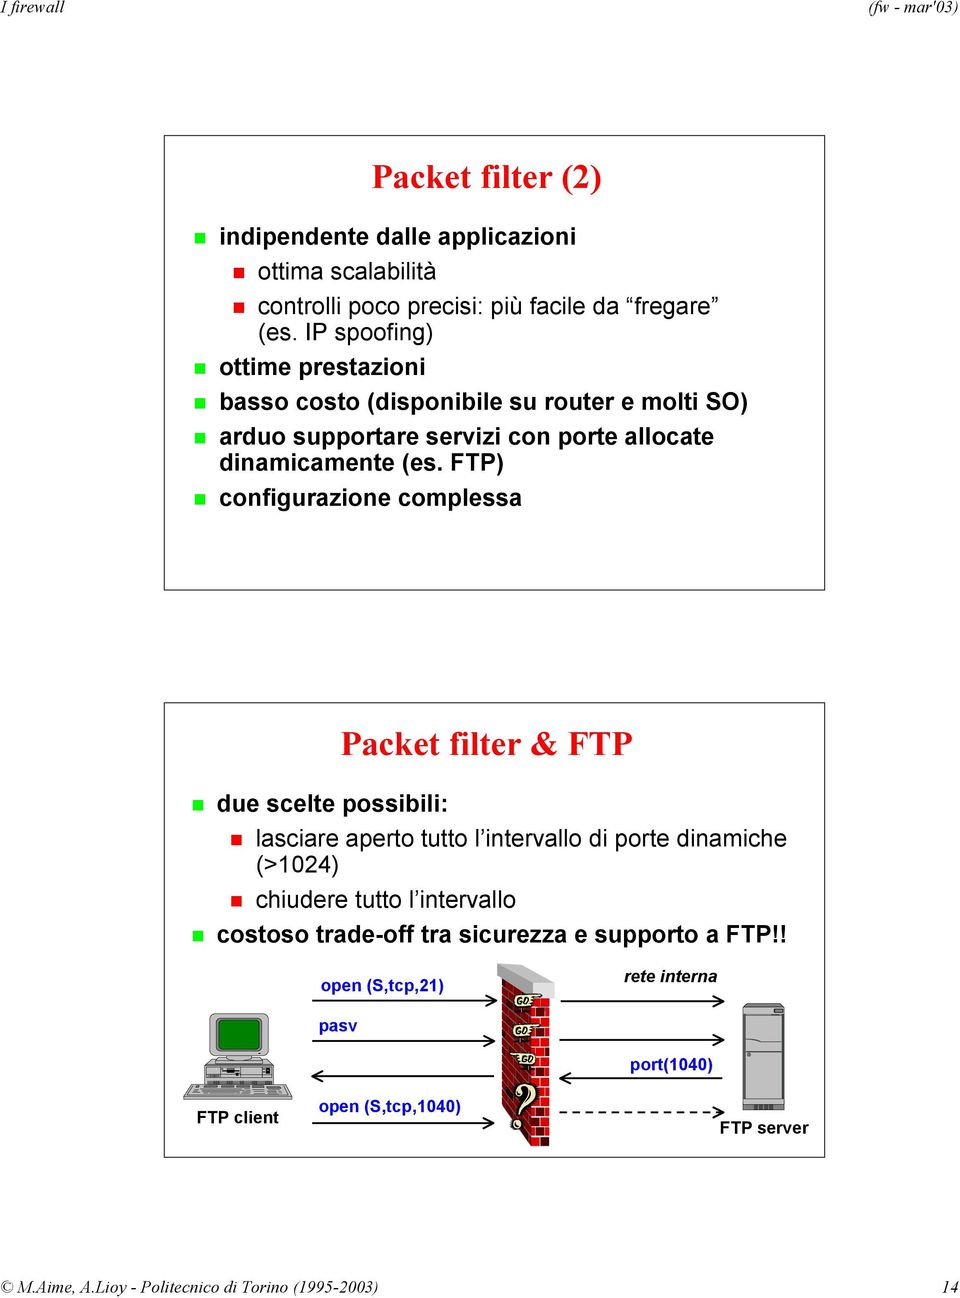 FTP) configurazione complessa due scelte possibili: Packet filter & FTP lasciare aperto tutto l intervallo di porte dinamiche (>1024) chiudere tutto l